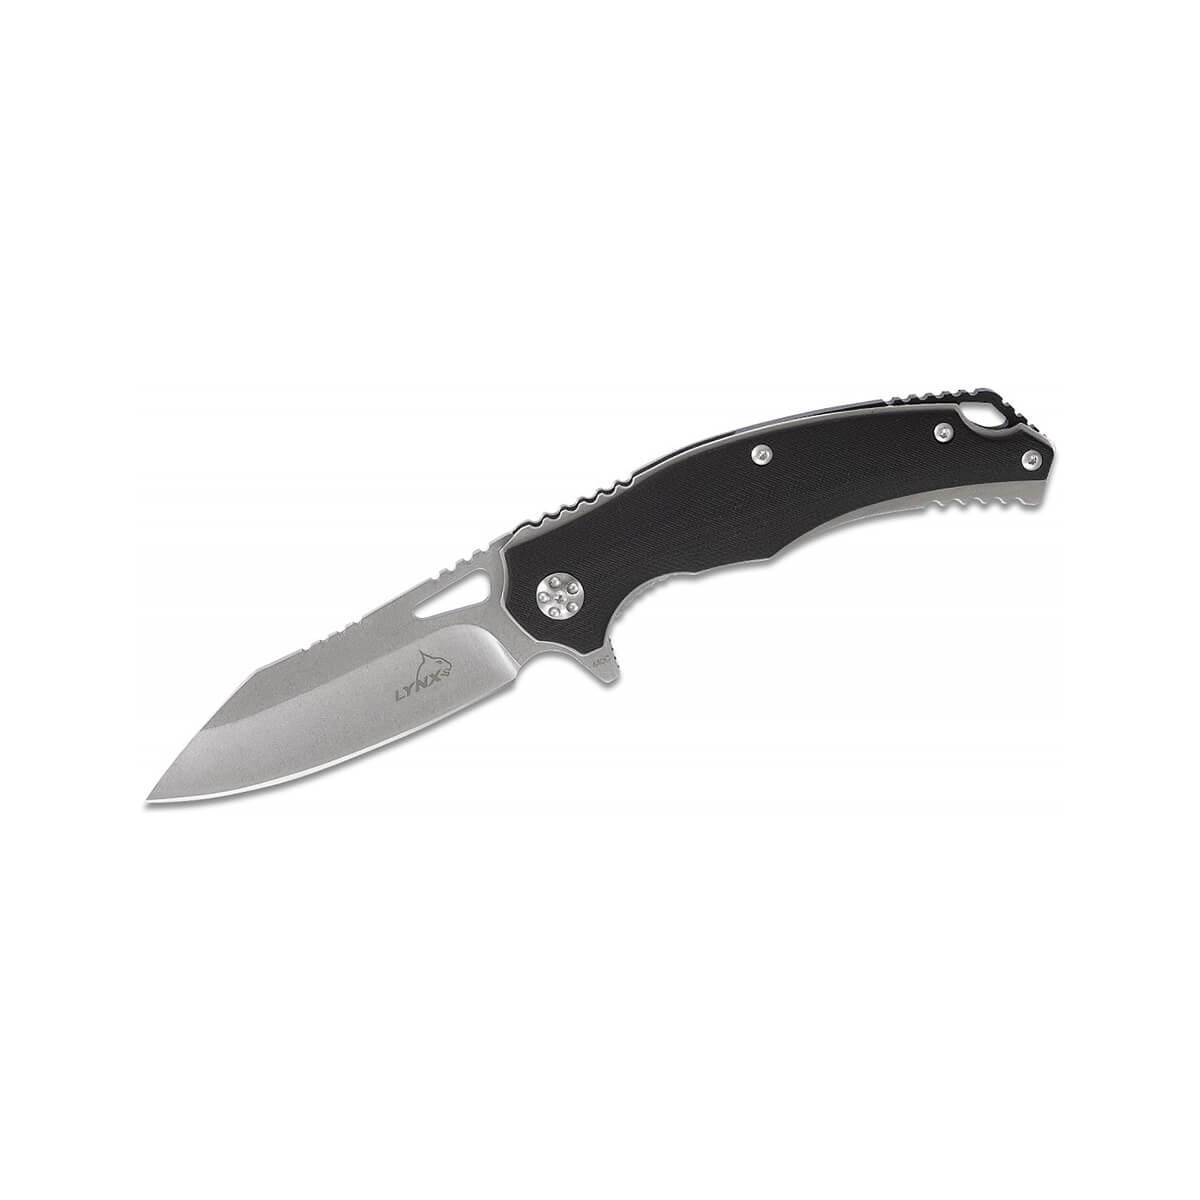  Black Panther Flipper Stonewash 440c Knife